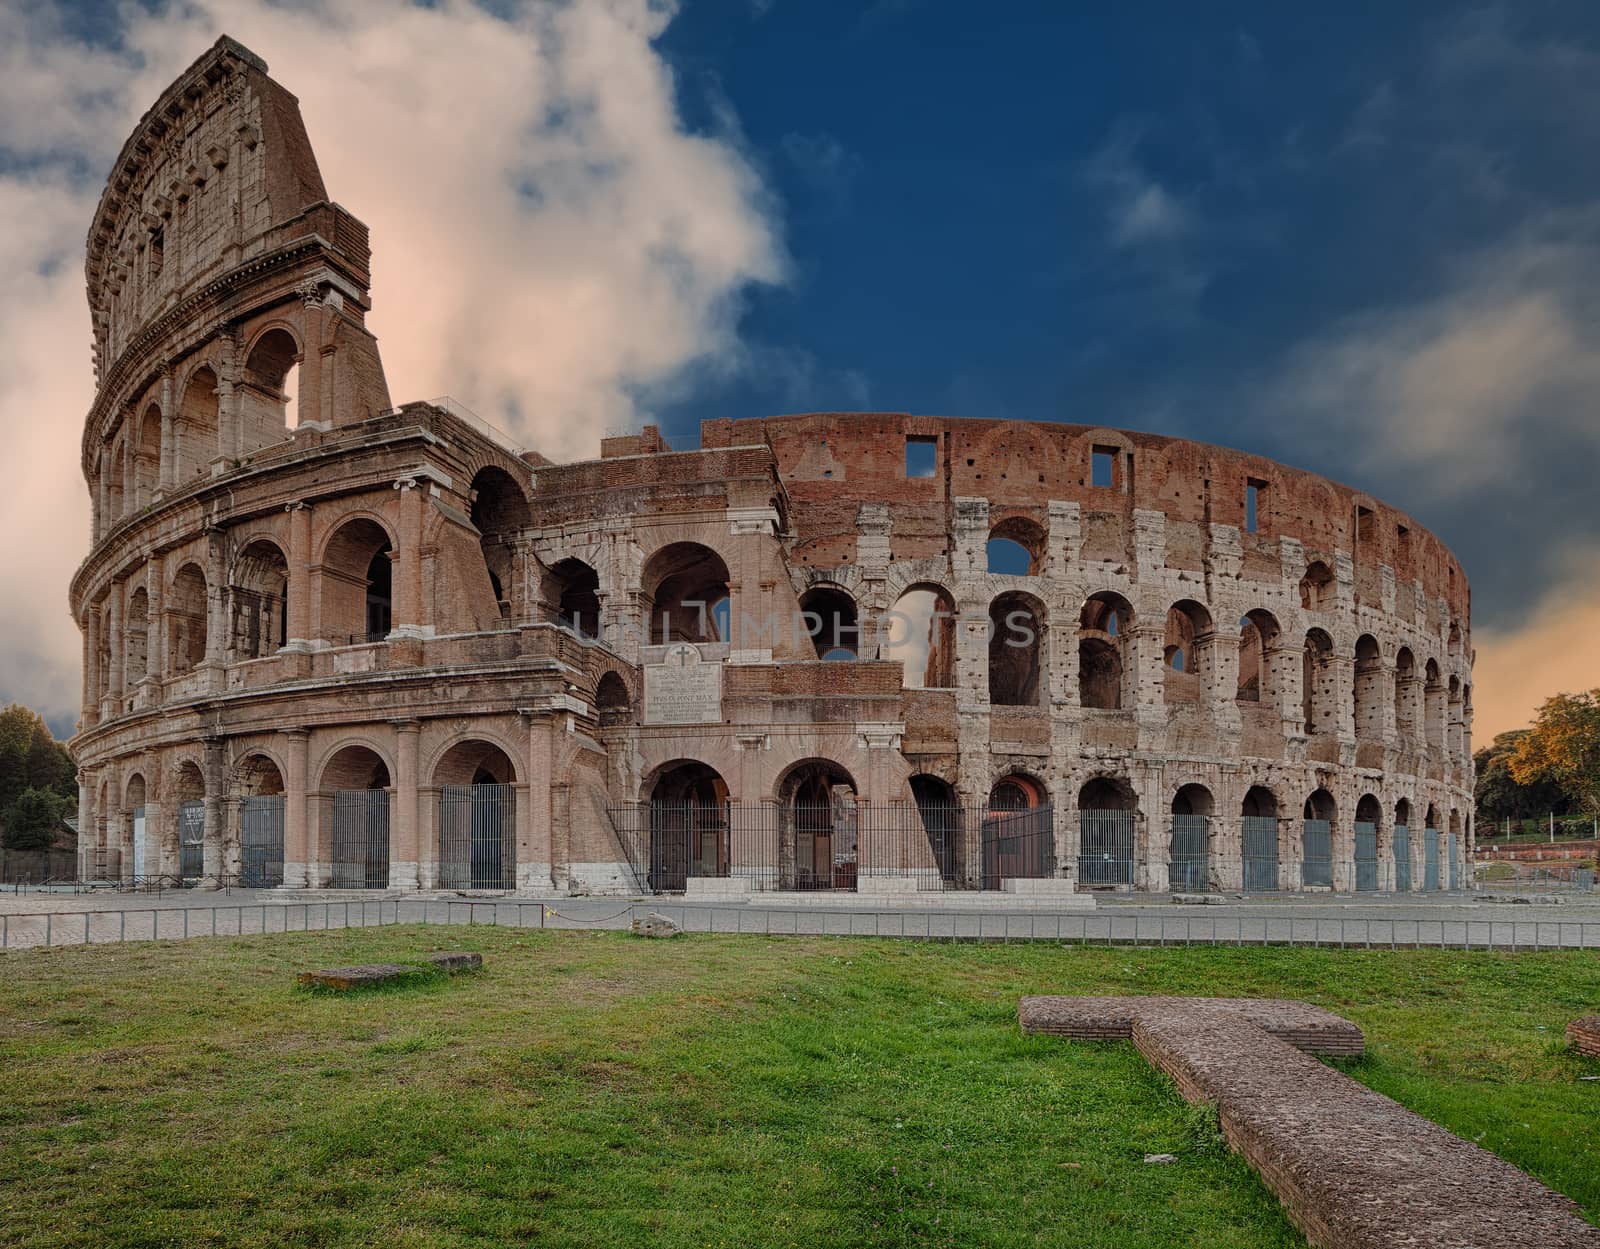 Coliseum known as the Flavian Amphitheatre